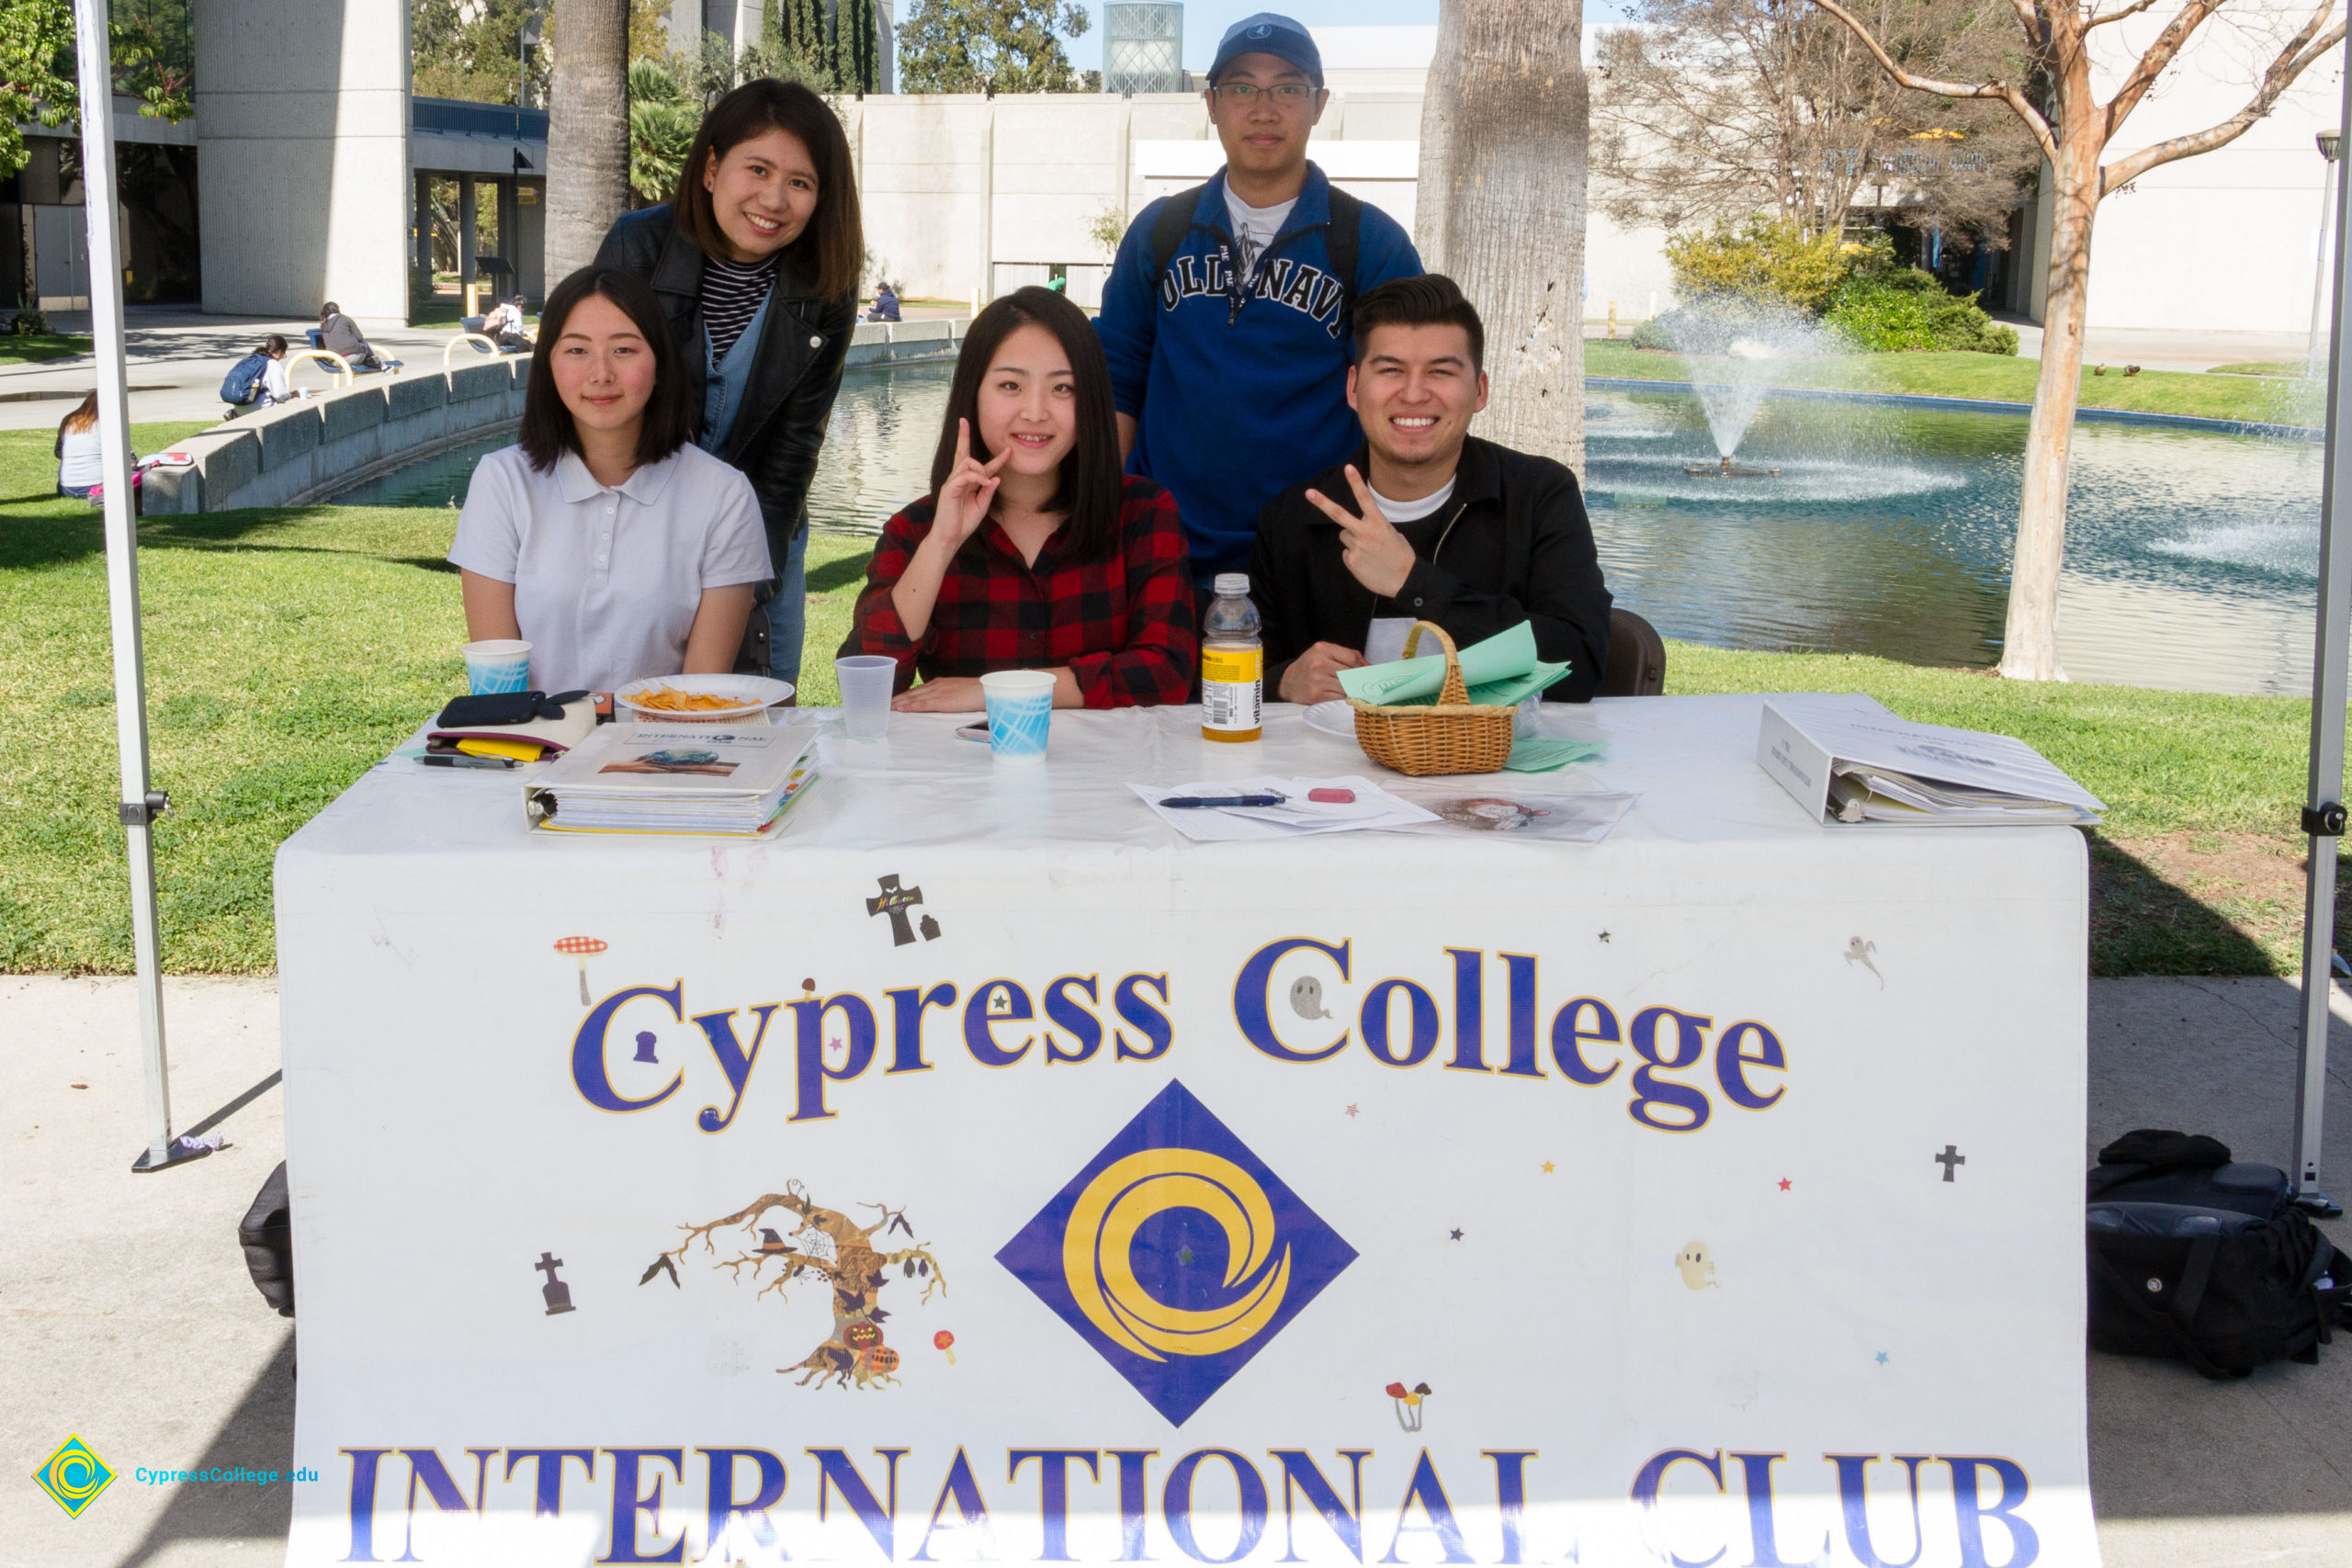 Cypress College International Club booth